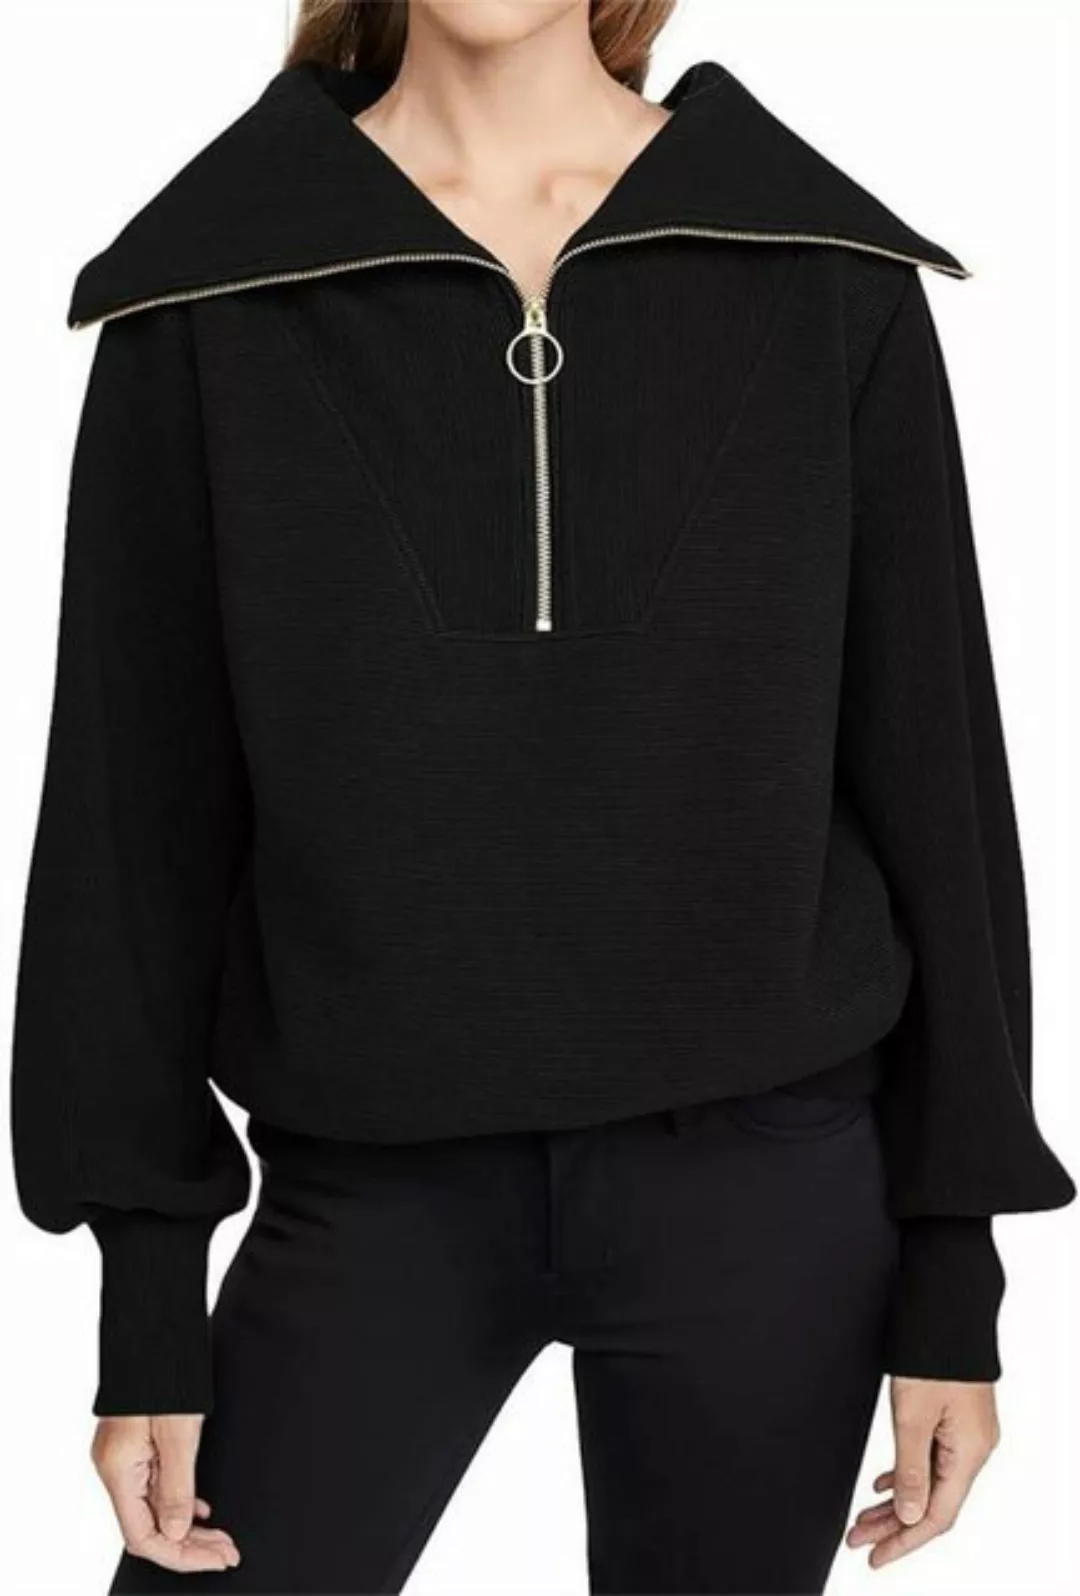 RUZU UG Strickpullover Pullover Damen Langarm Hälfte Zip Sweatshirt Klamott günstig online kaufen